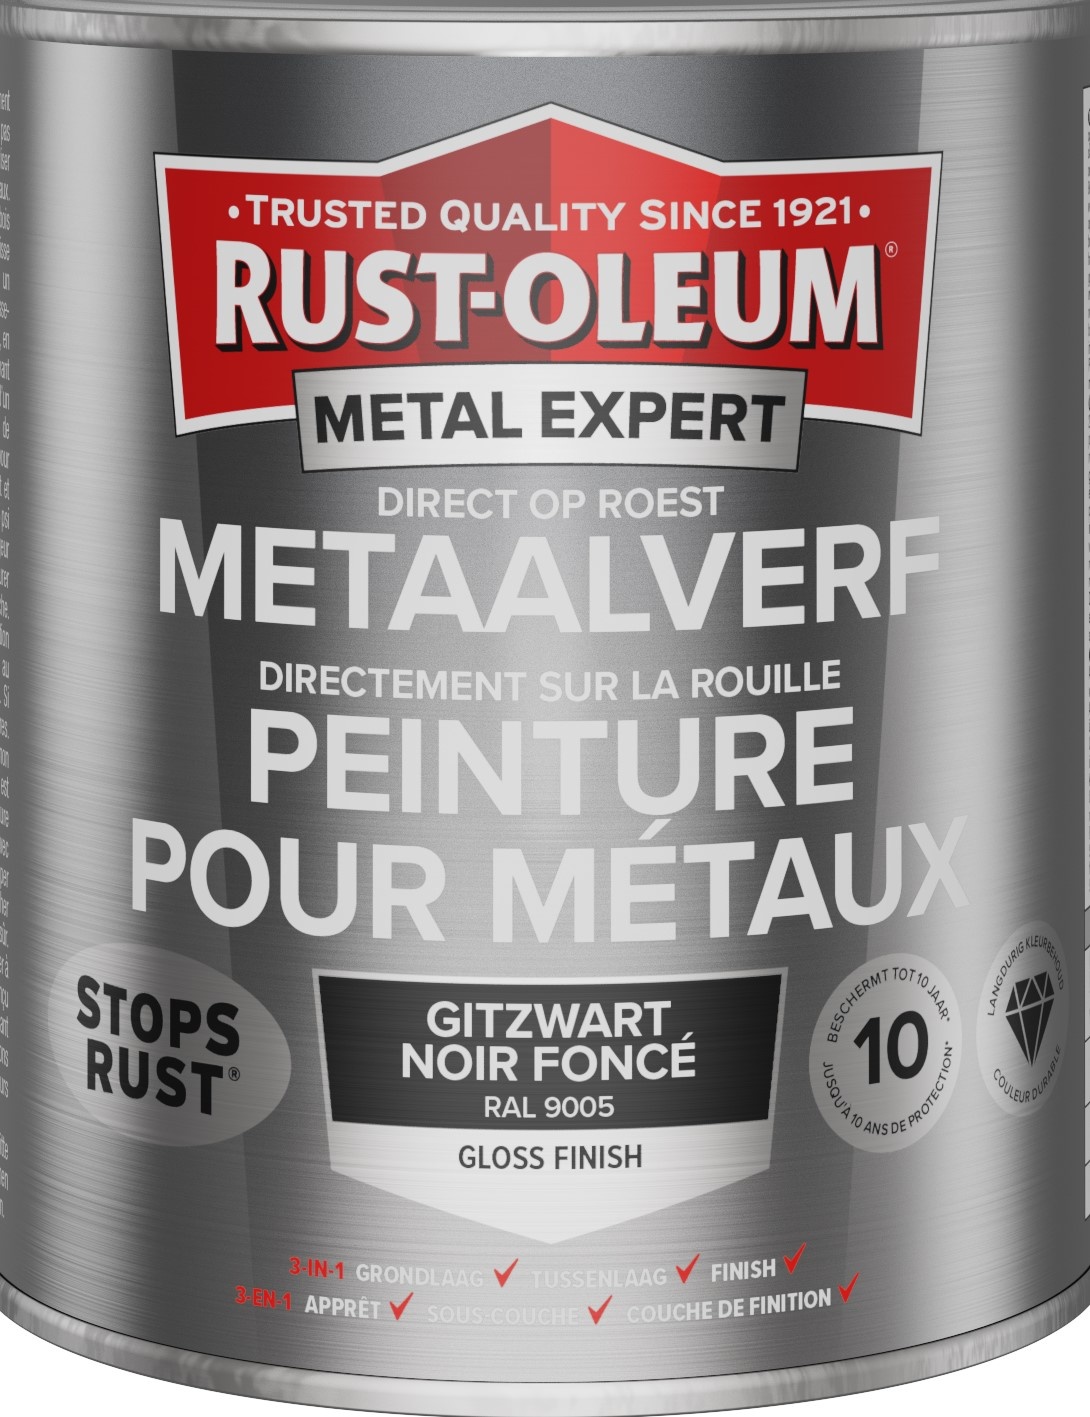 rust-oleum metal expert metaalverf gloss ral 9005 0.75 ltr